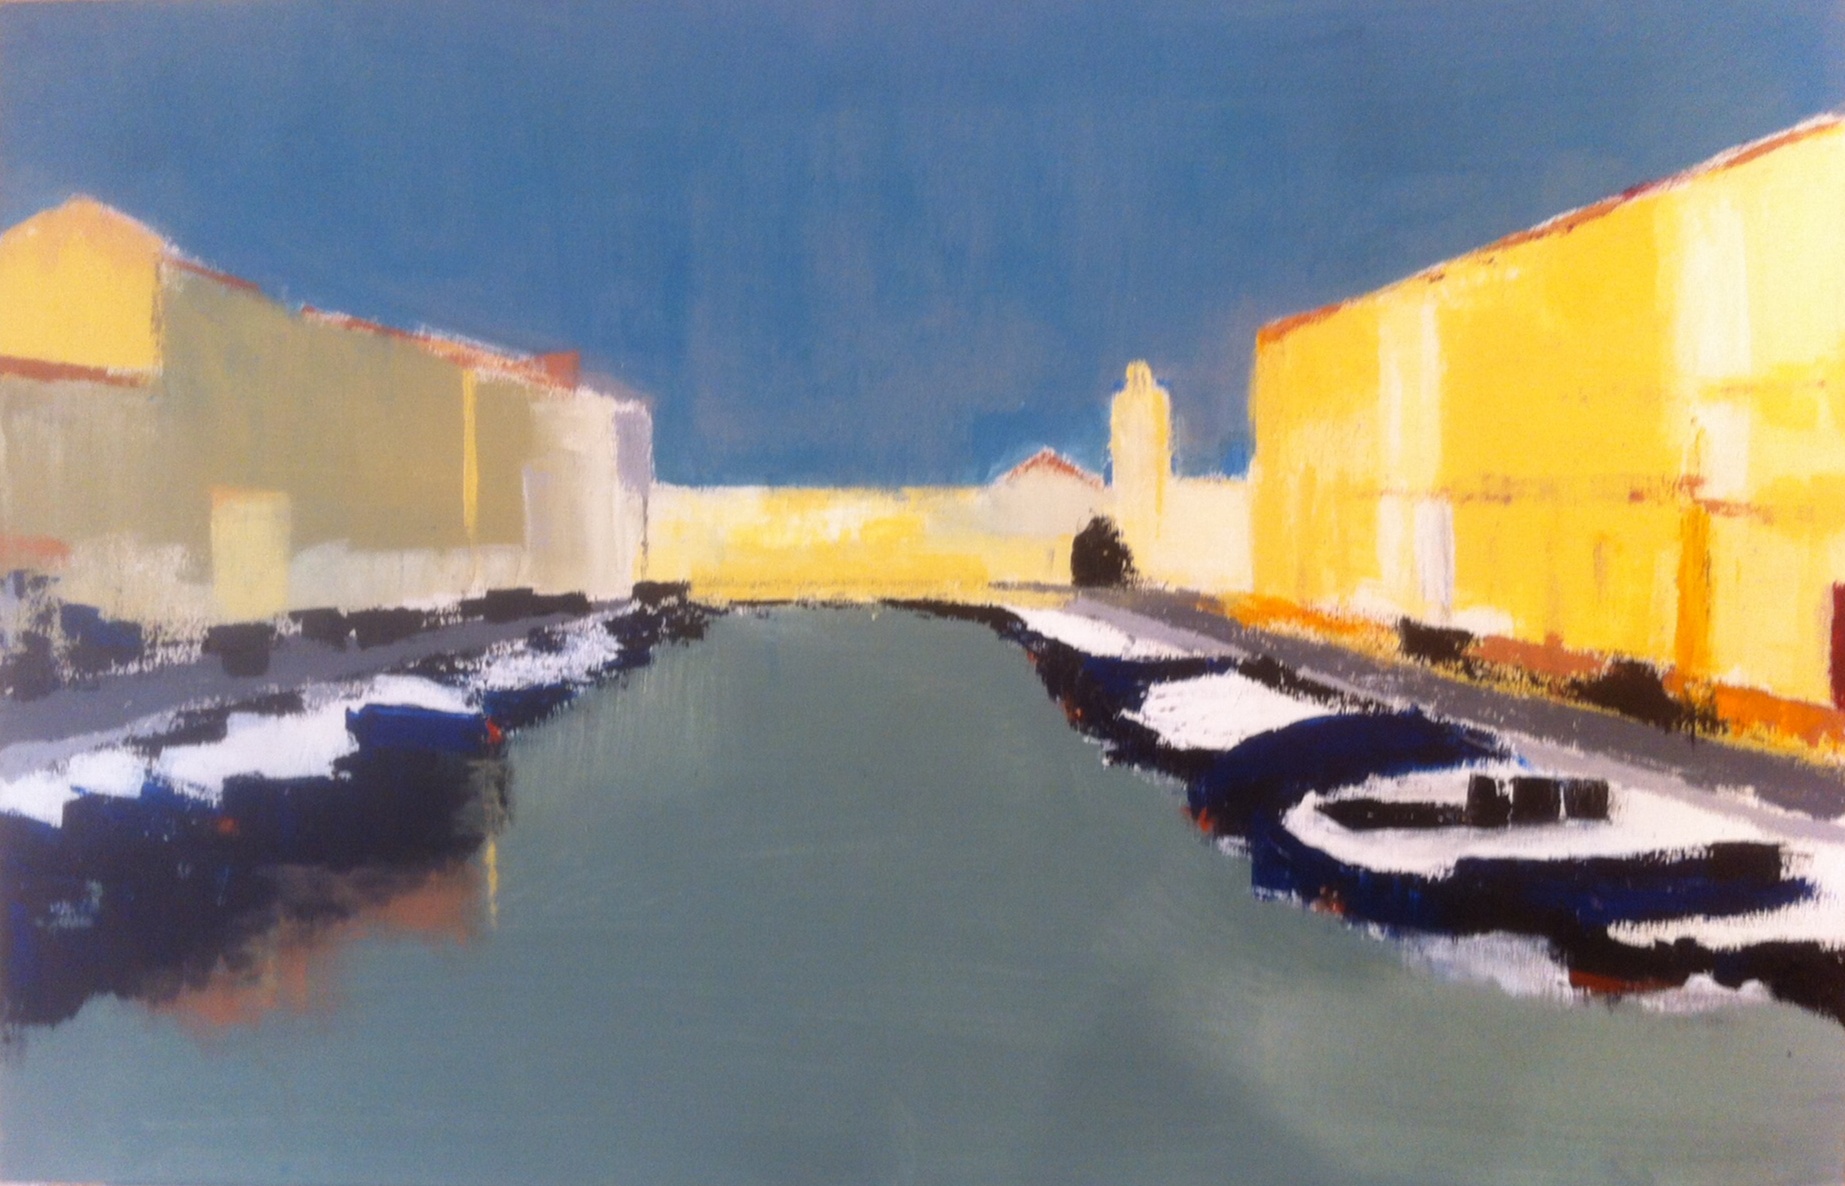 N°1708 - Le grand canal à Sète - Acrylique sur toile - 60 x 92 cm - 27 novembre 2014